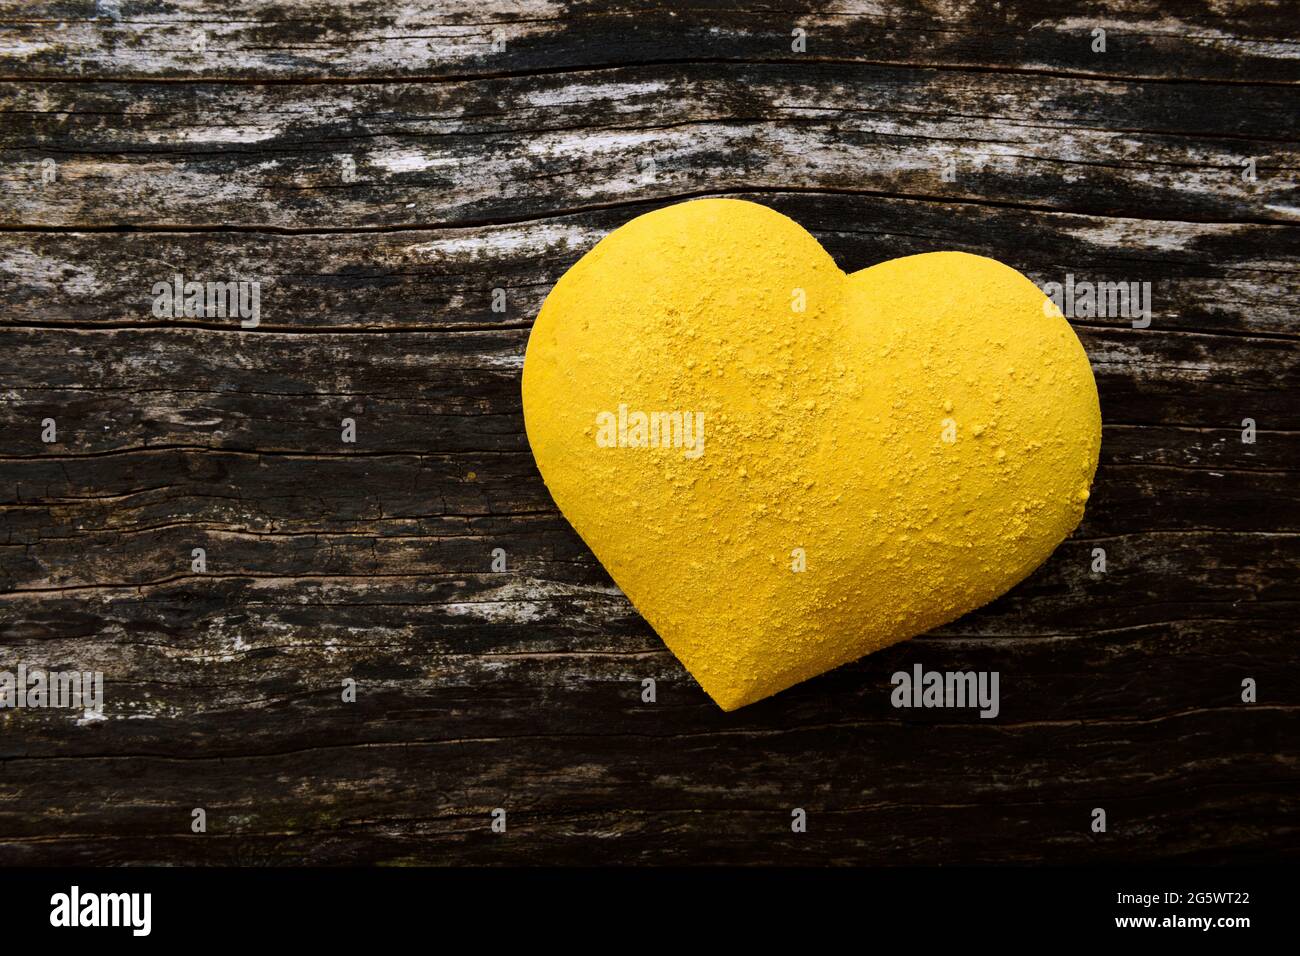 forma tridimensionale del cuore verniciato giallo, e spruzzato con pigmento secco, sullo sfondo di legno intemperie. Foto Stock